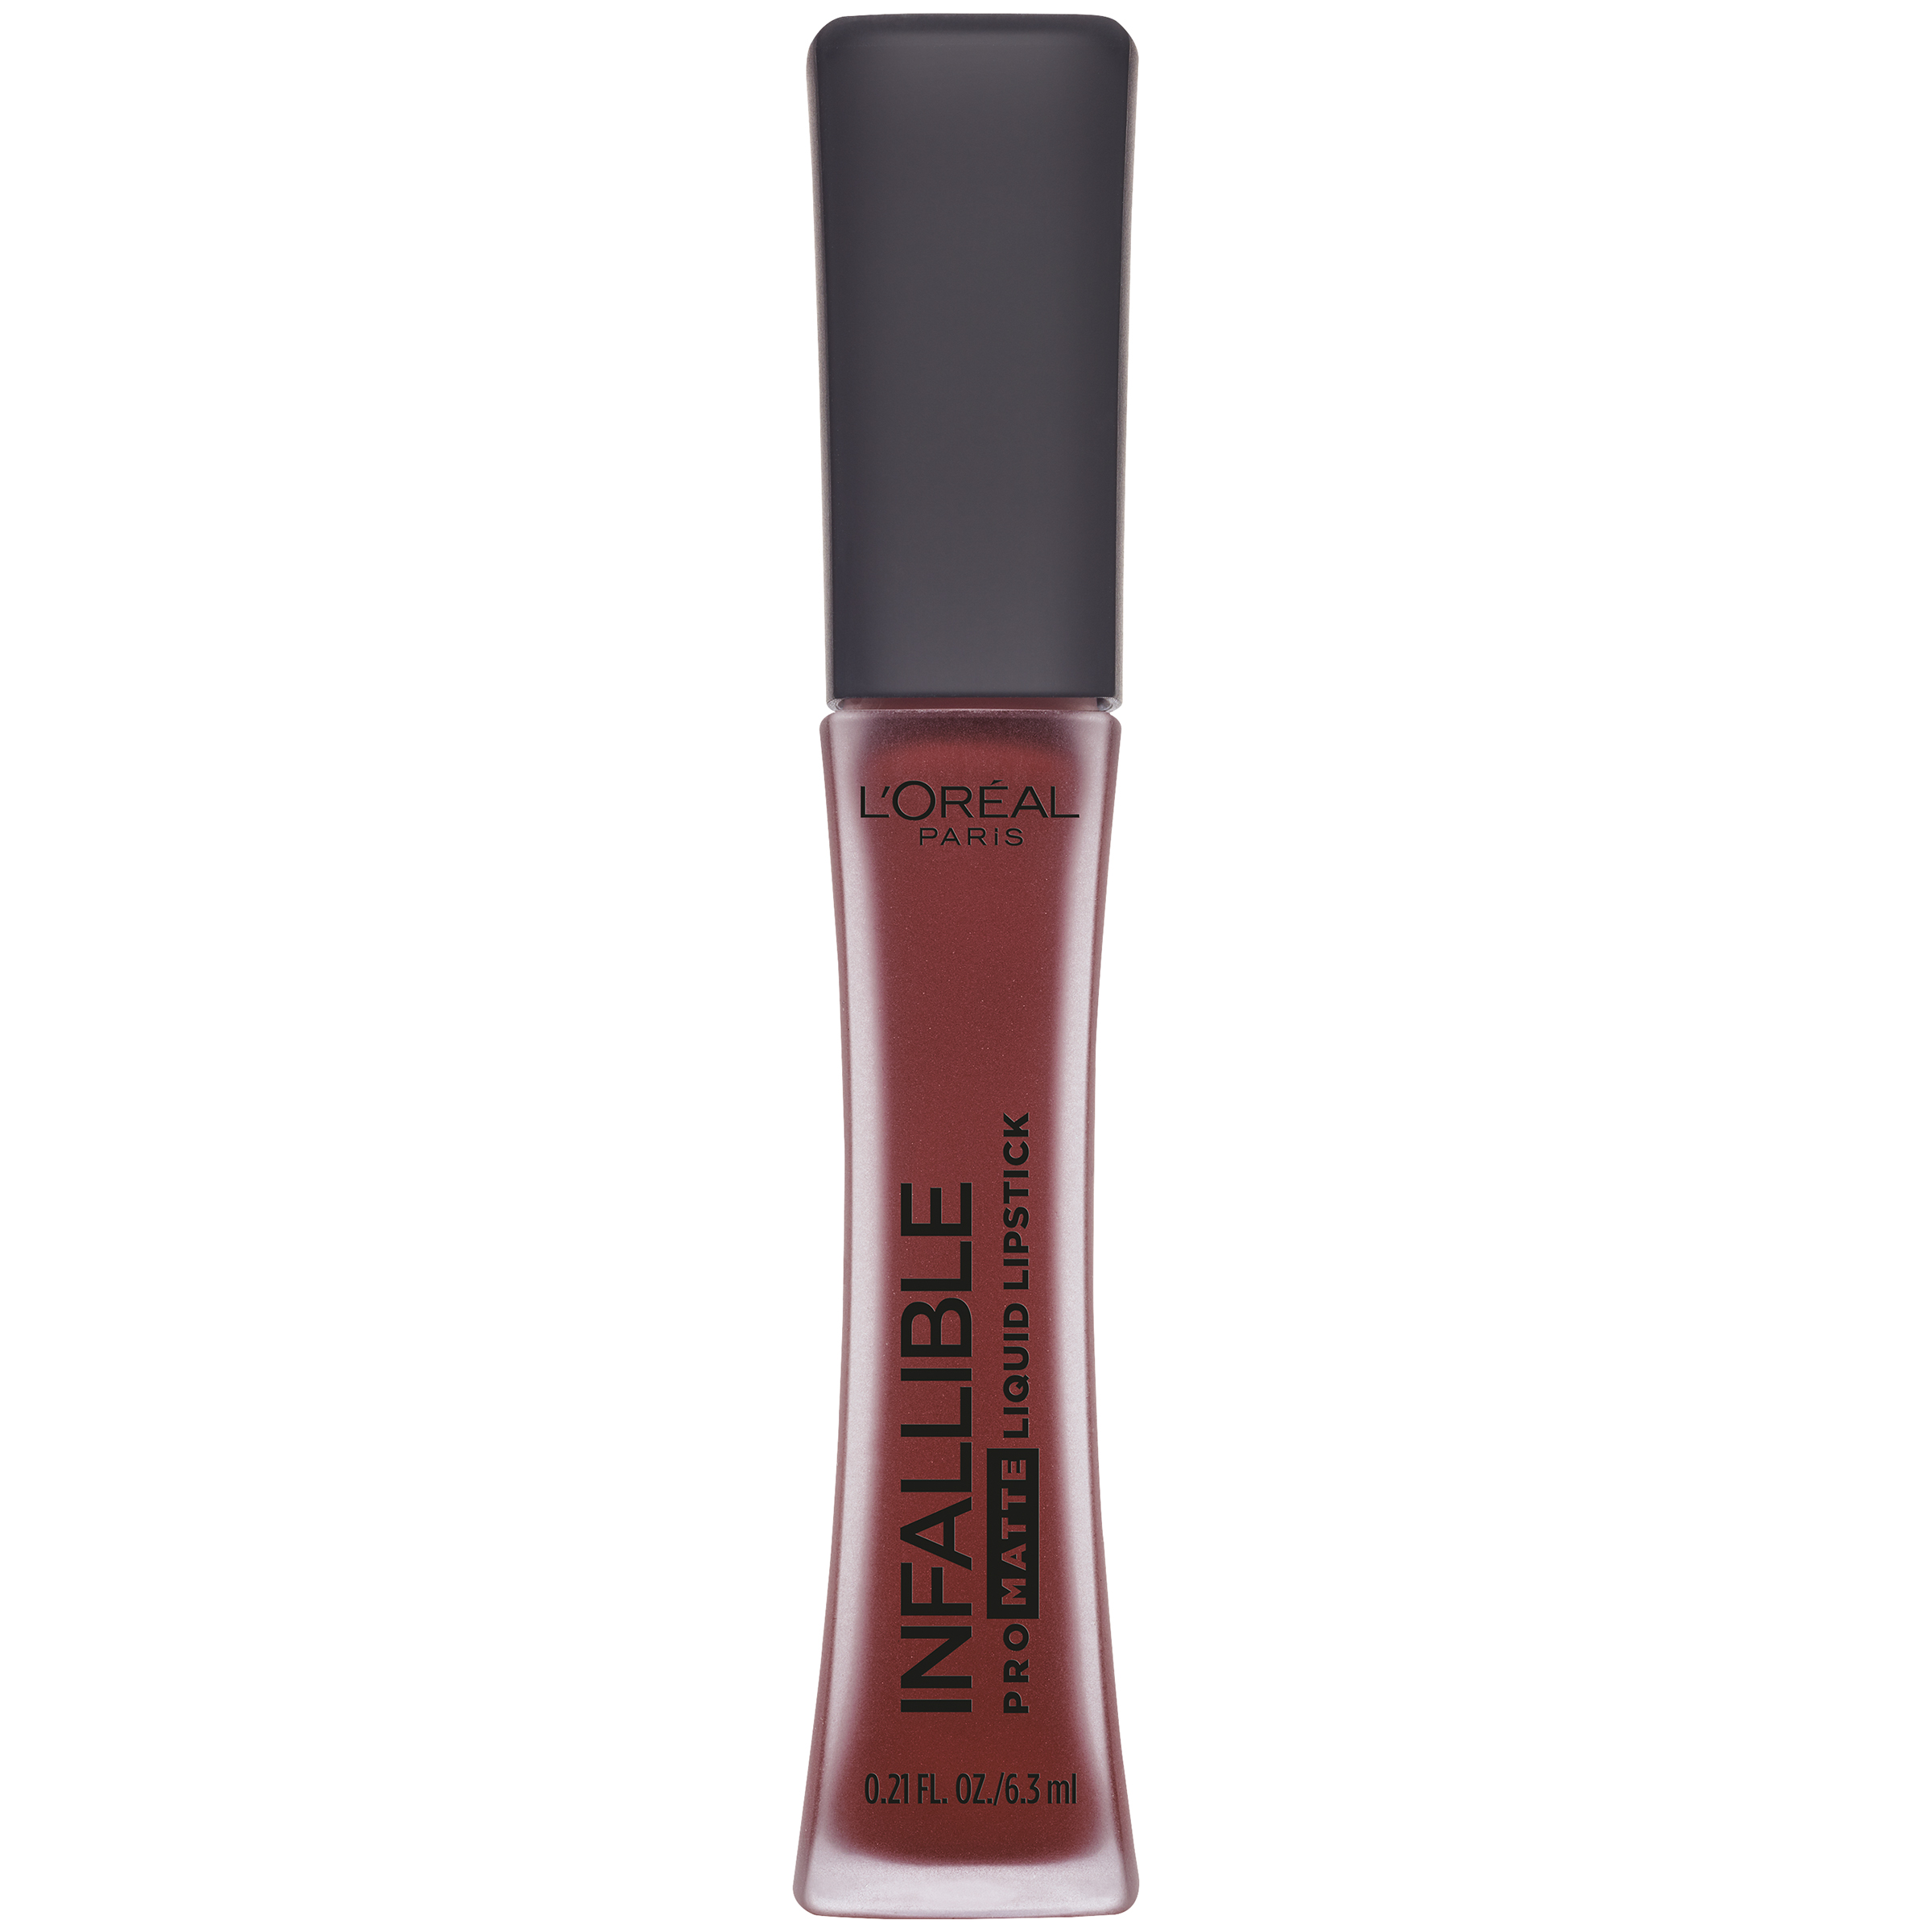 L'Oreal L'Or&#233;al Paris Infallible Pro-Matte Liquid Lipstick 366 Stirred,0.21 fl. oz. Bottle